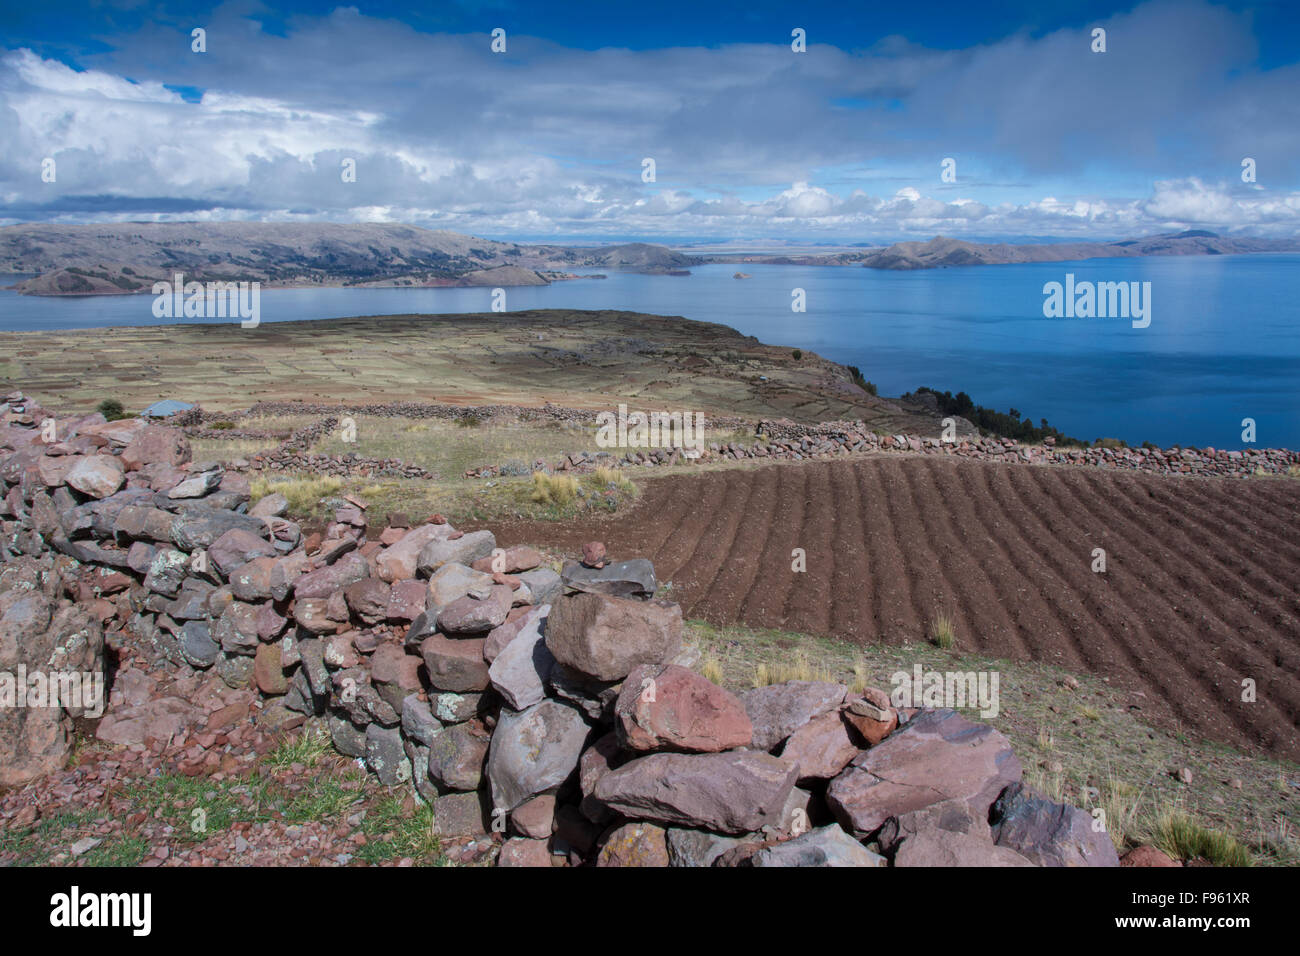 Island of Amantani, Lake Titicaca, Peru Stock Photo